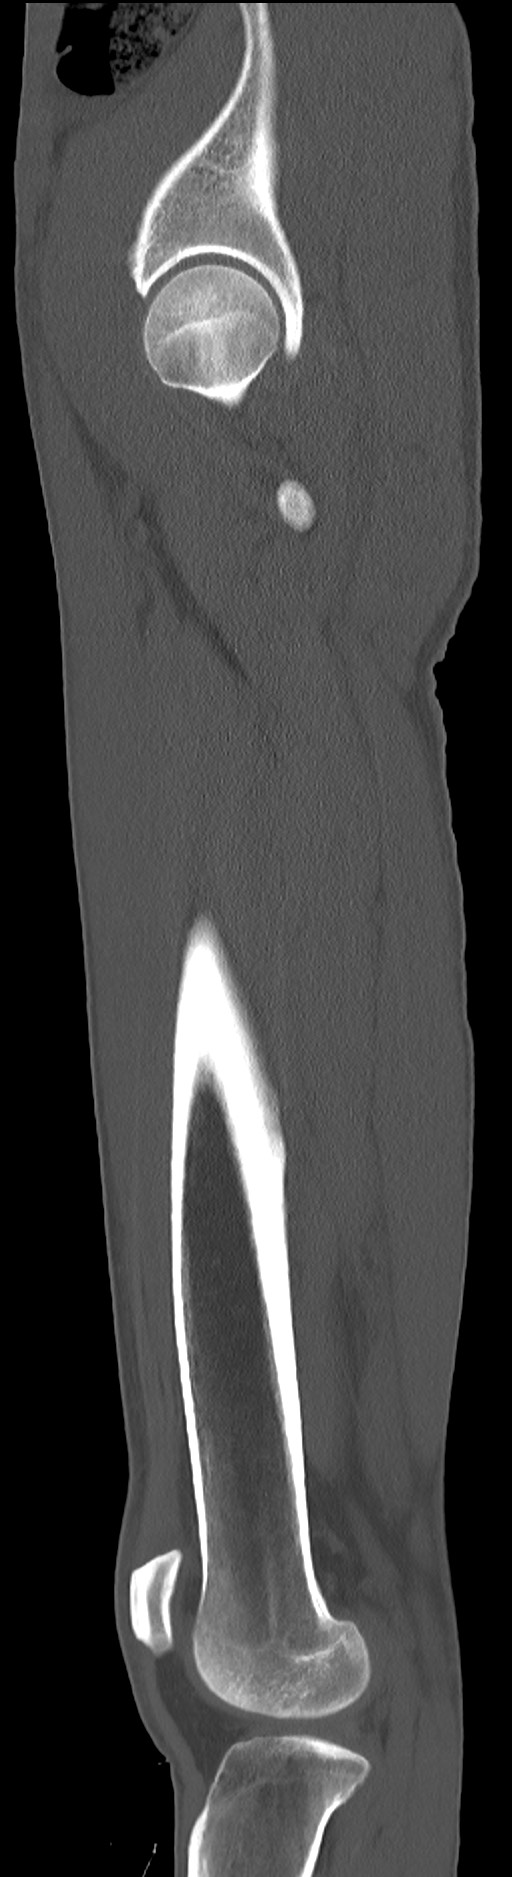 Chronic osteomyelitis (with sequestrum) (Radiopaedia 74813-85822 C 30).jpg